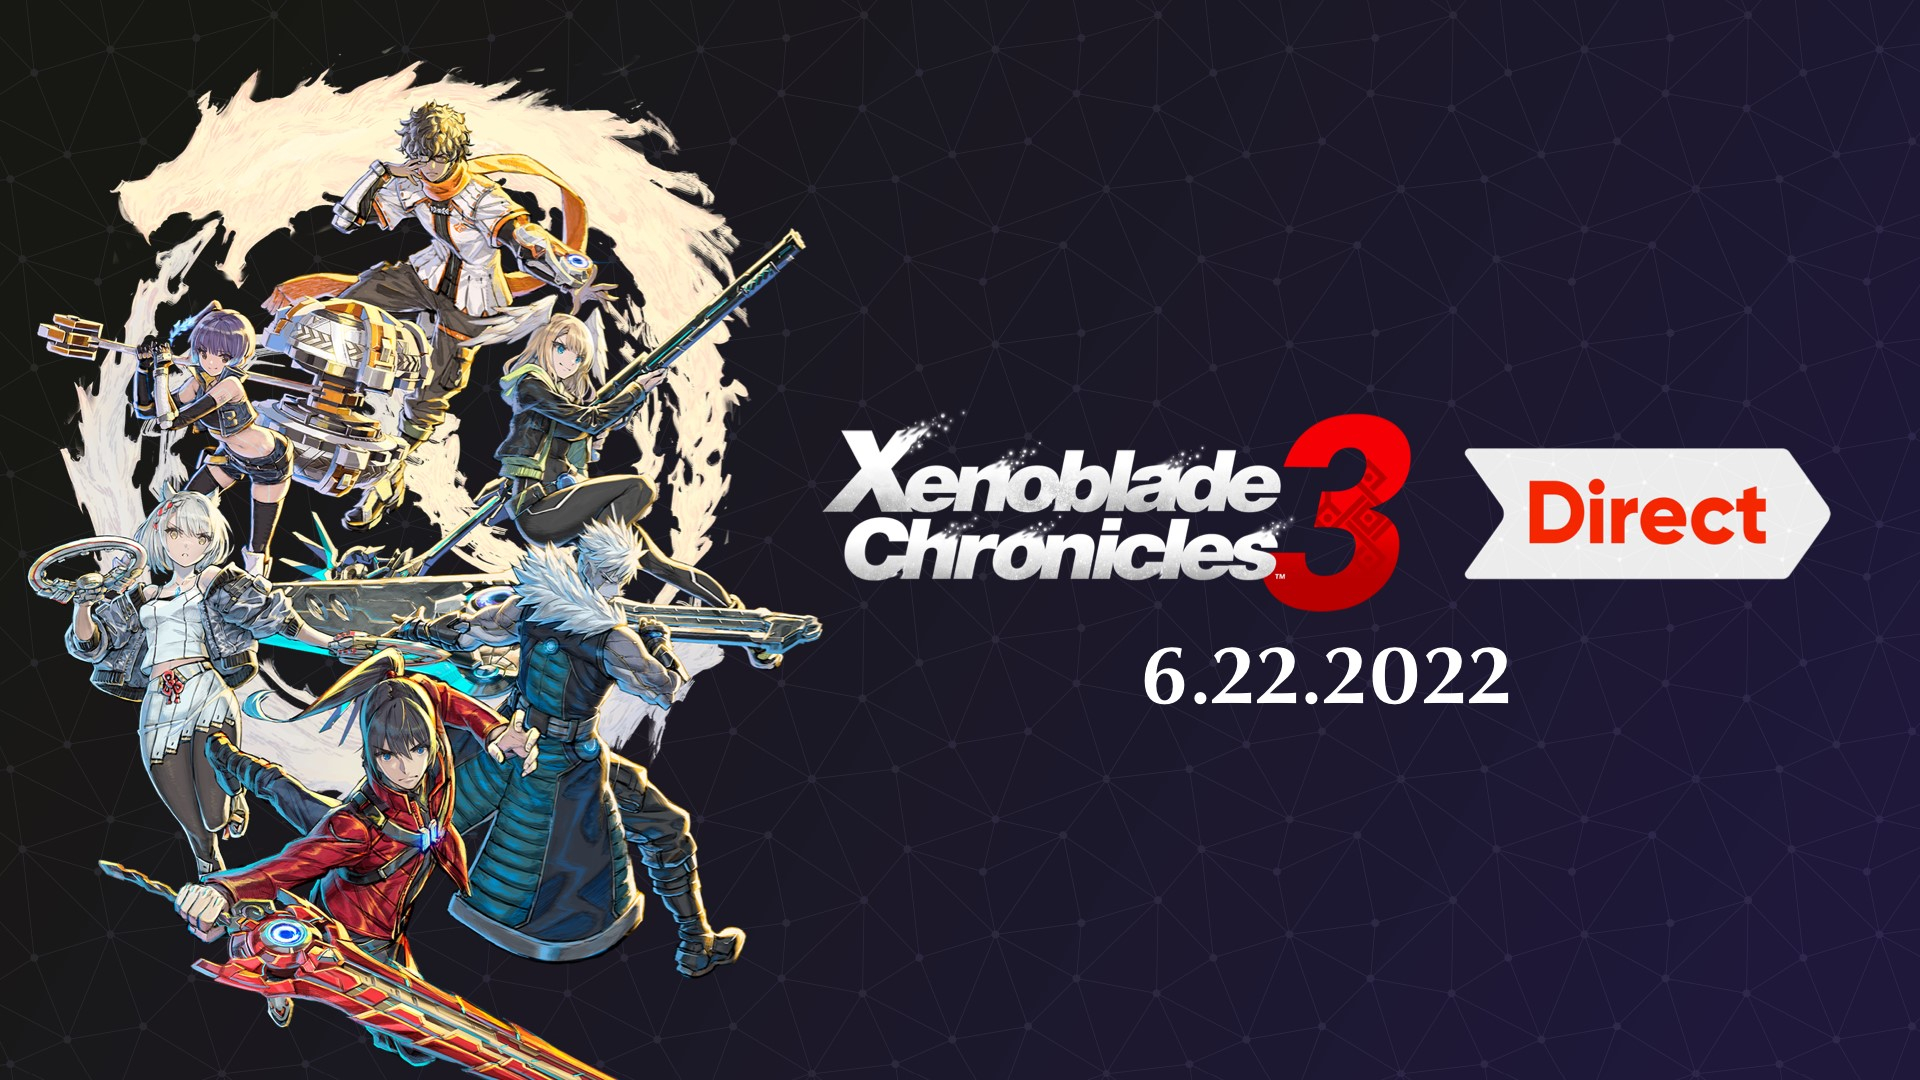 A (Xenoblade Chronicles), Nintendo